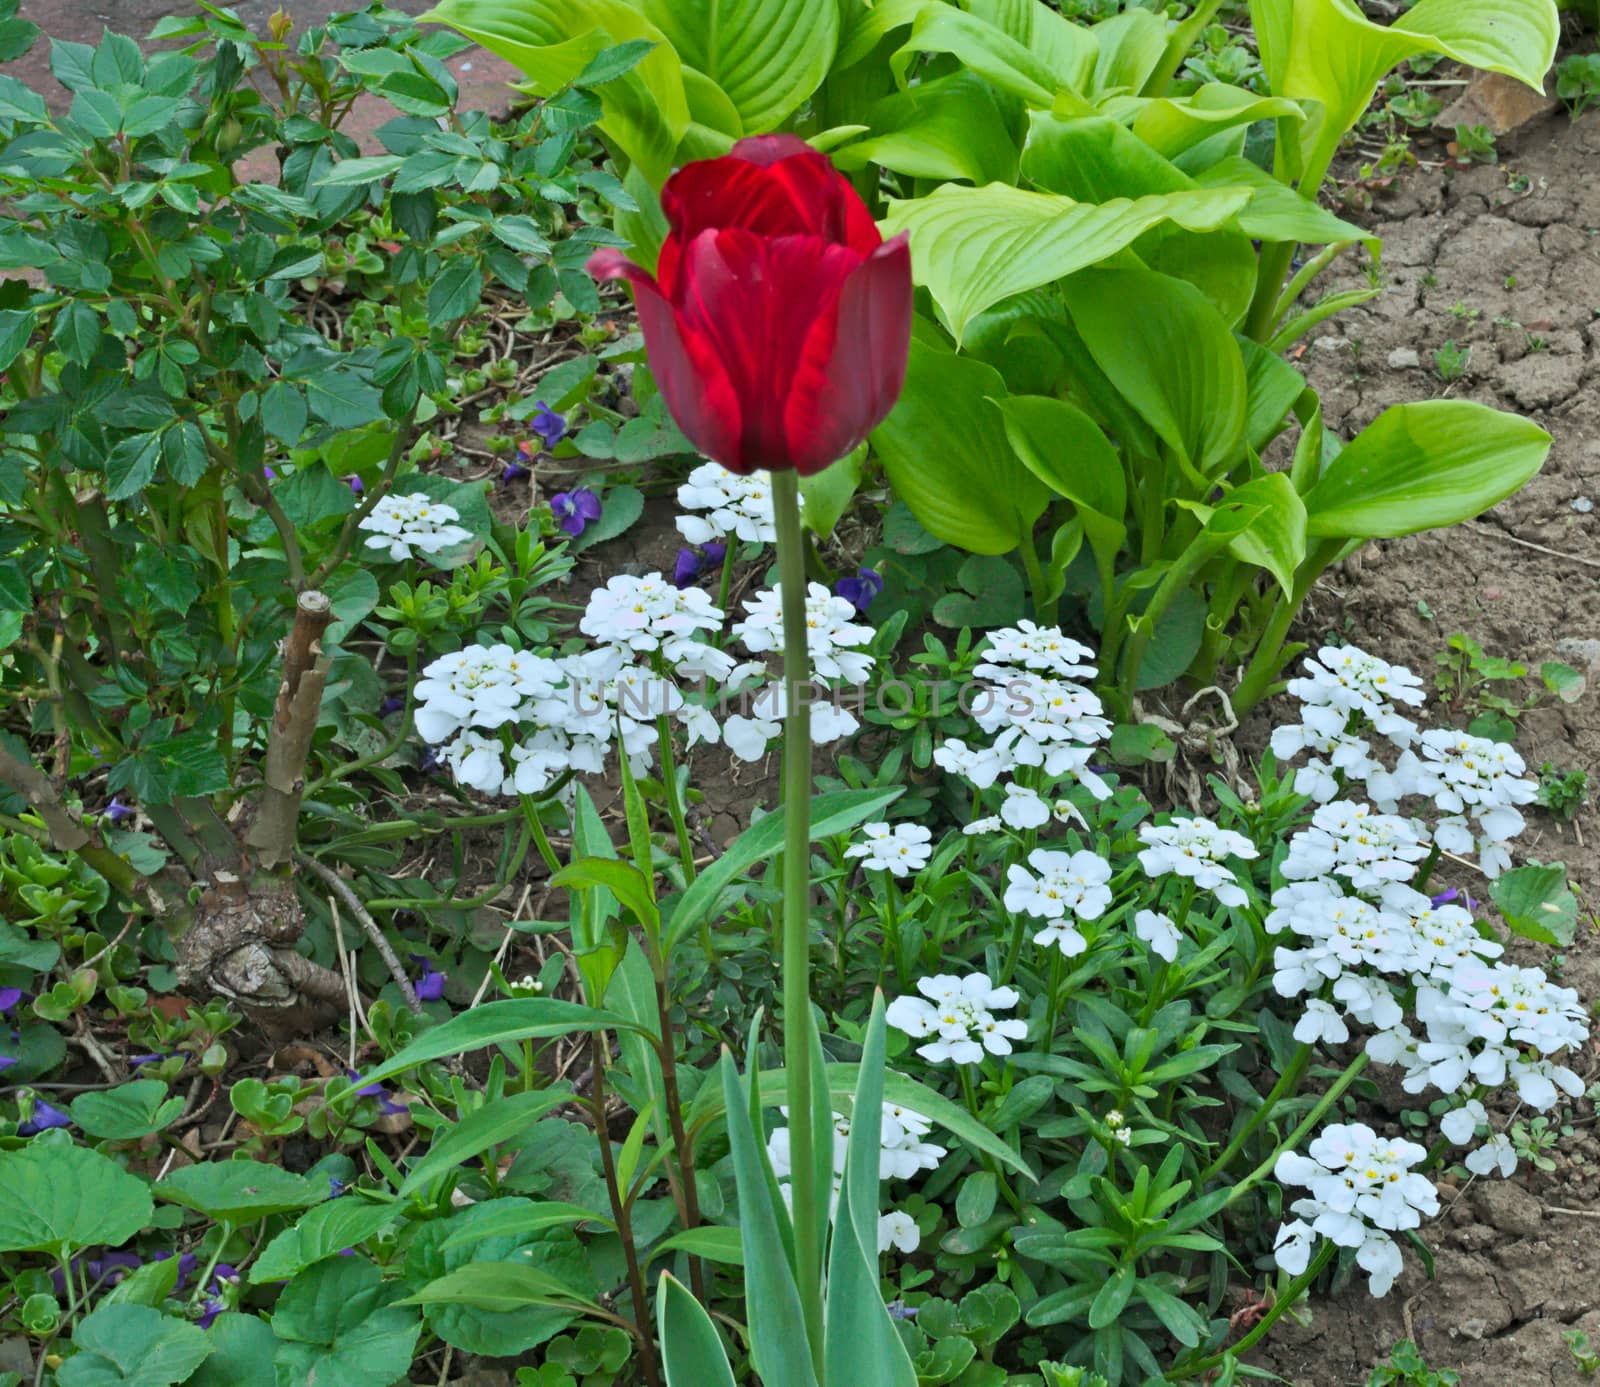 Red tulip blooming in garden